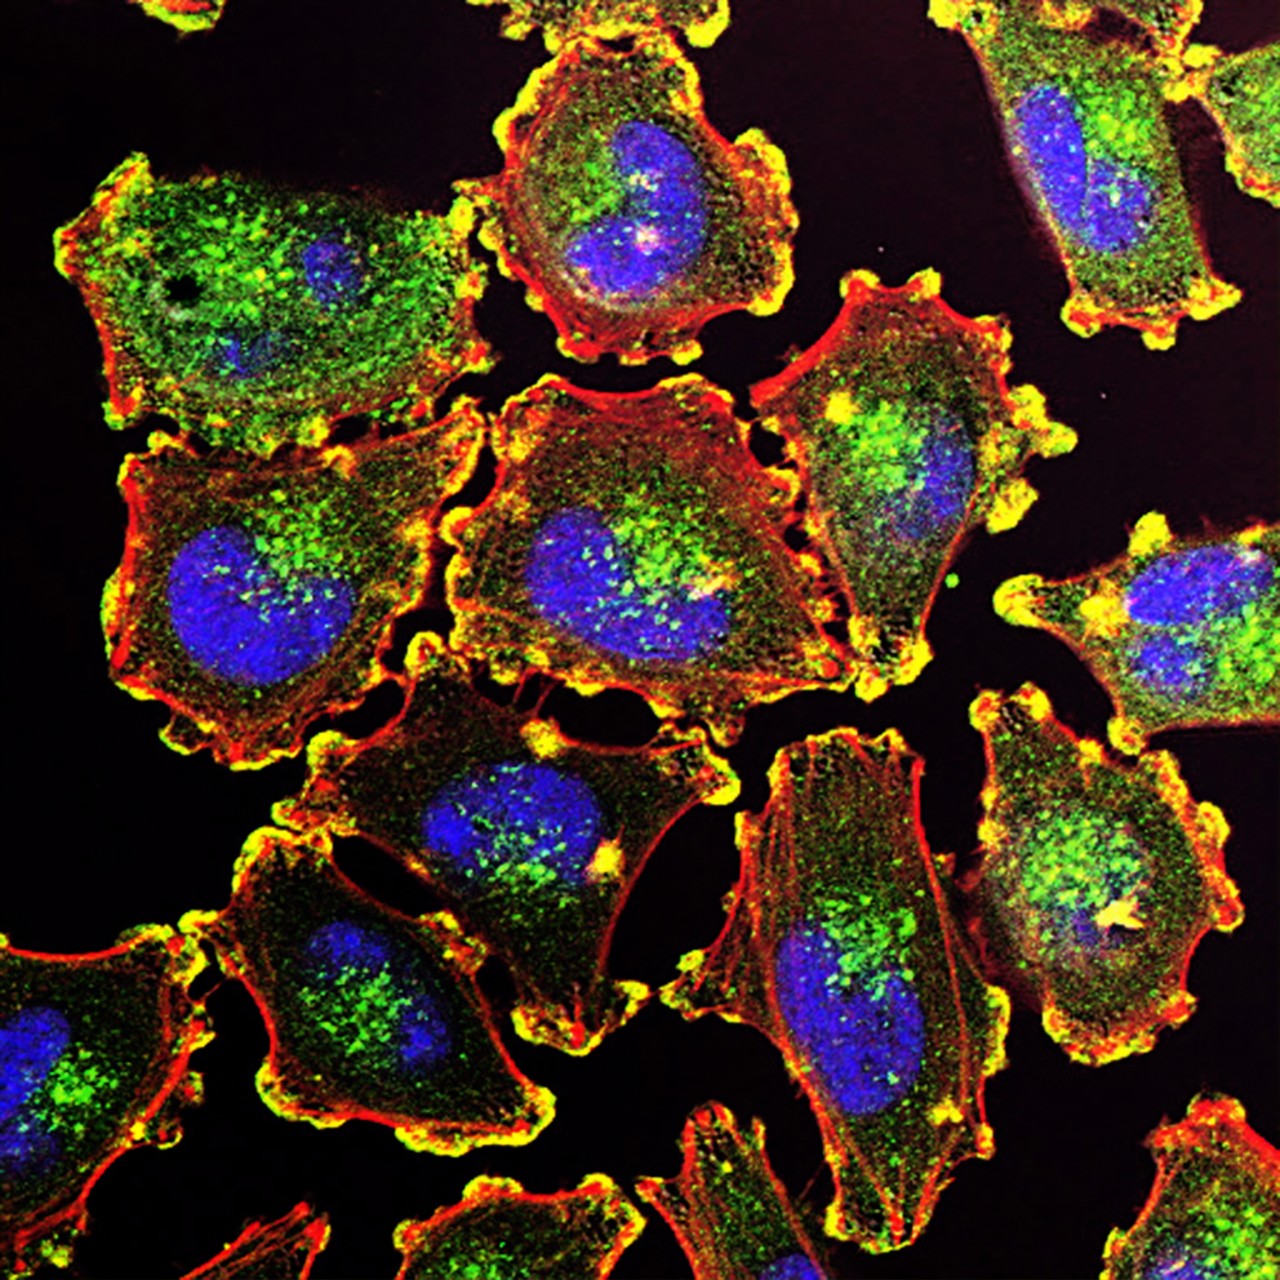 metastic melanoma cells